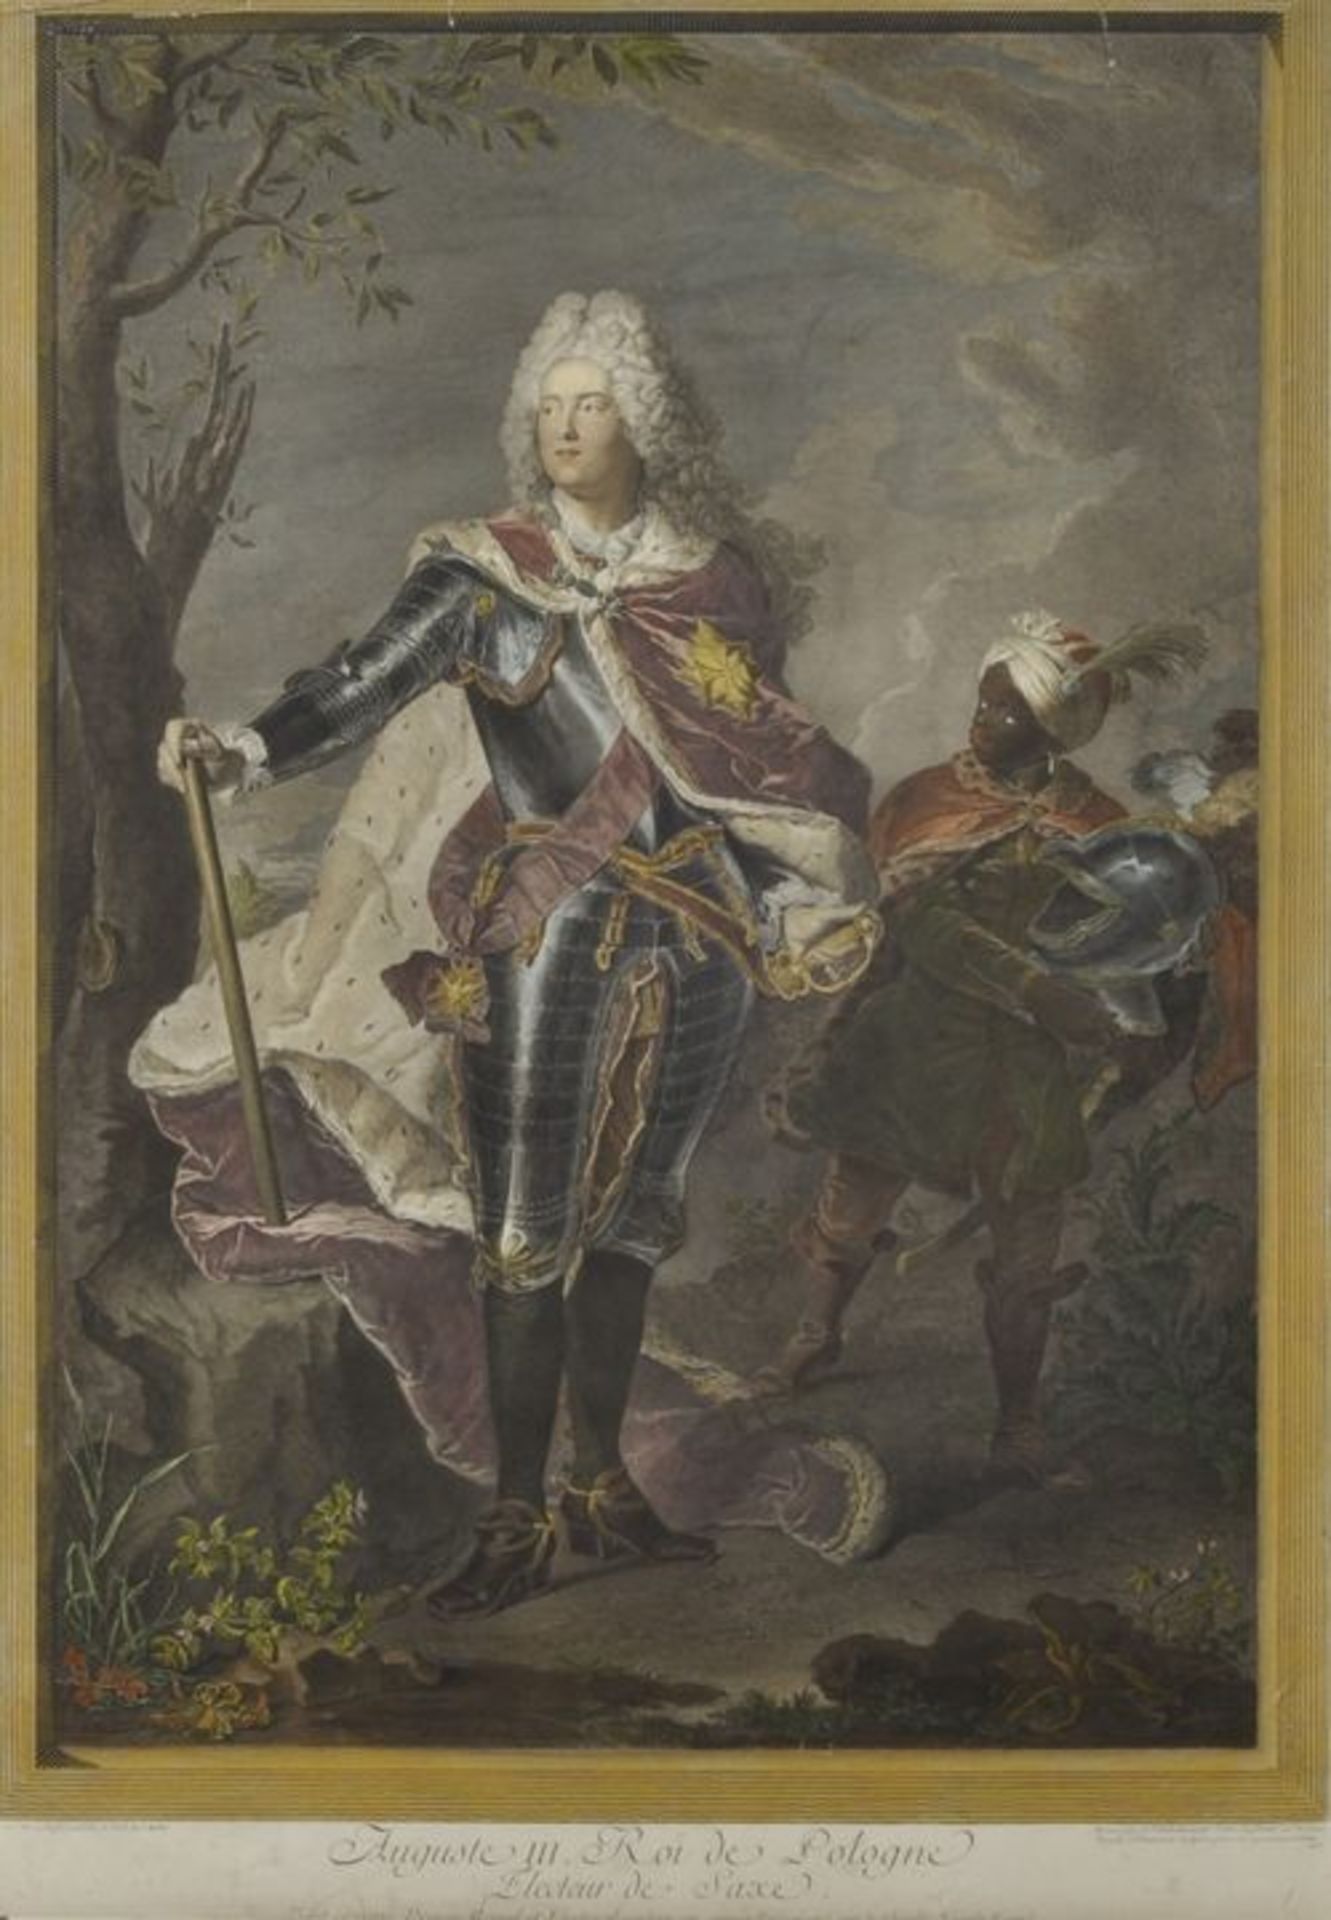 Balechou, Jean-Josephe. 1716-1764 "August III. Roi de Pologne Electeur de Saxe." Nach Hyacinthe